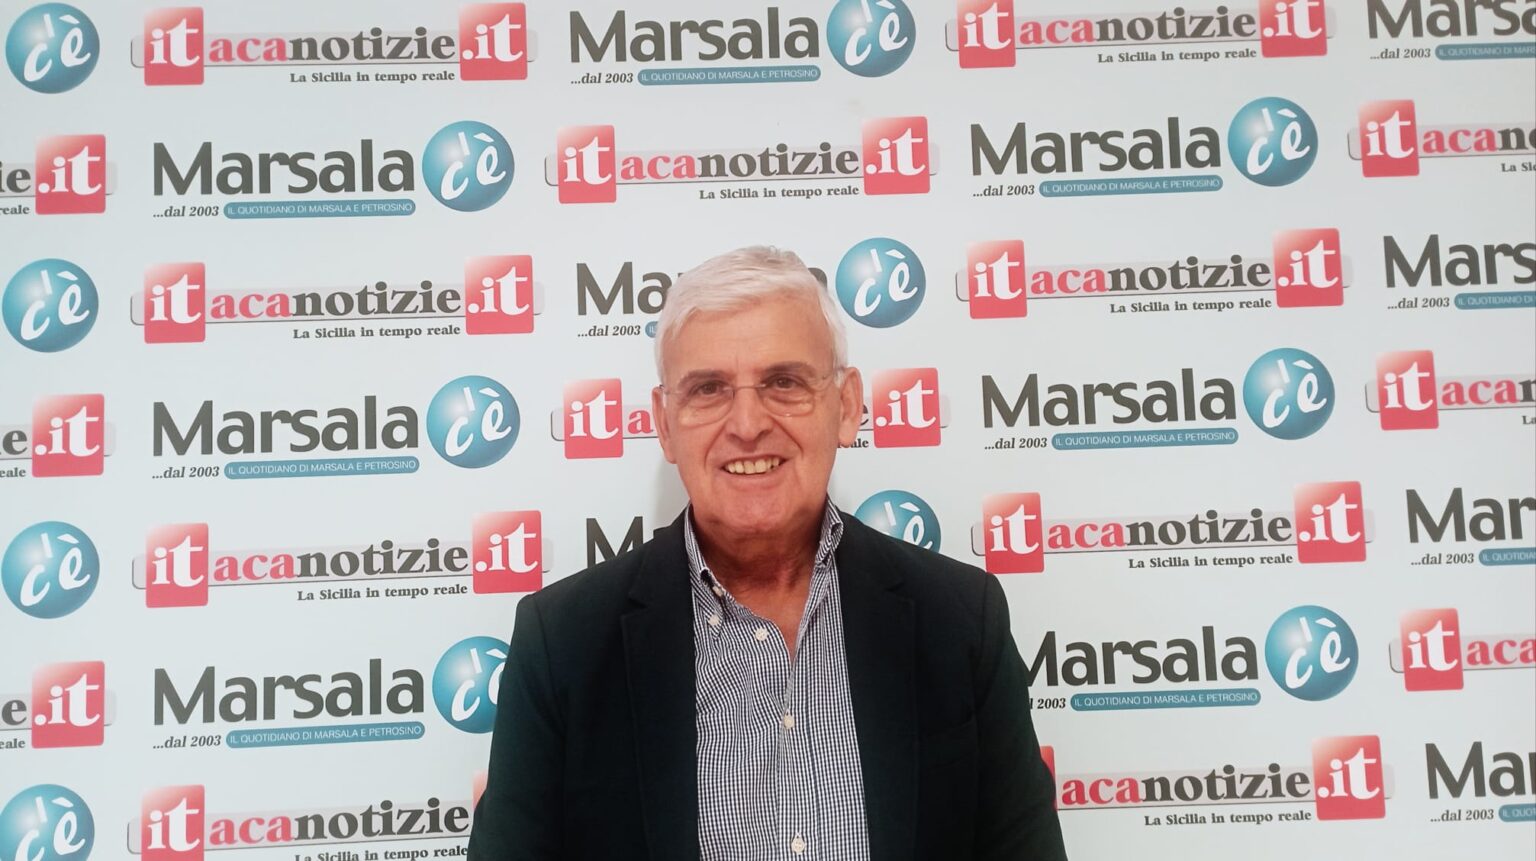 Stefano Pellegrino: “Da Grillo ci aspettavamo una svolta amministrativa diversa”